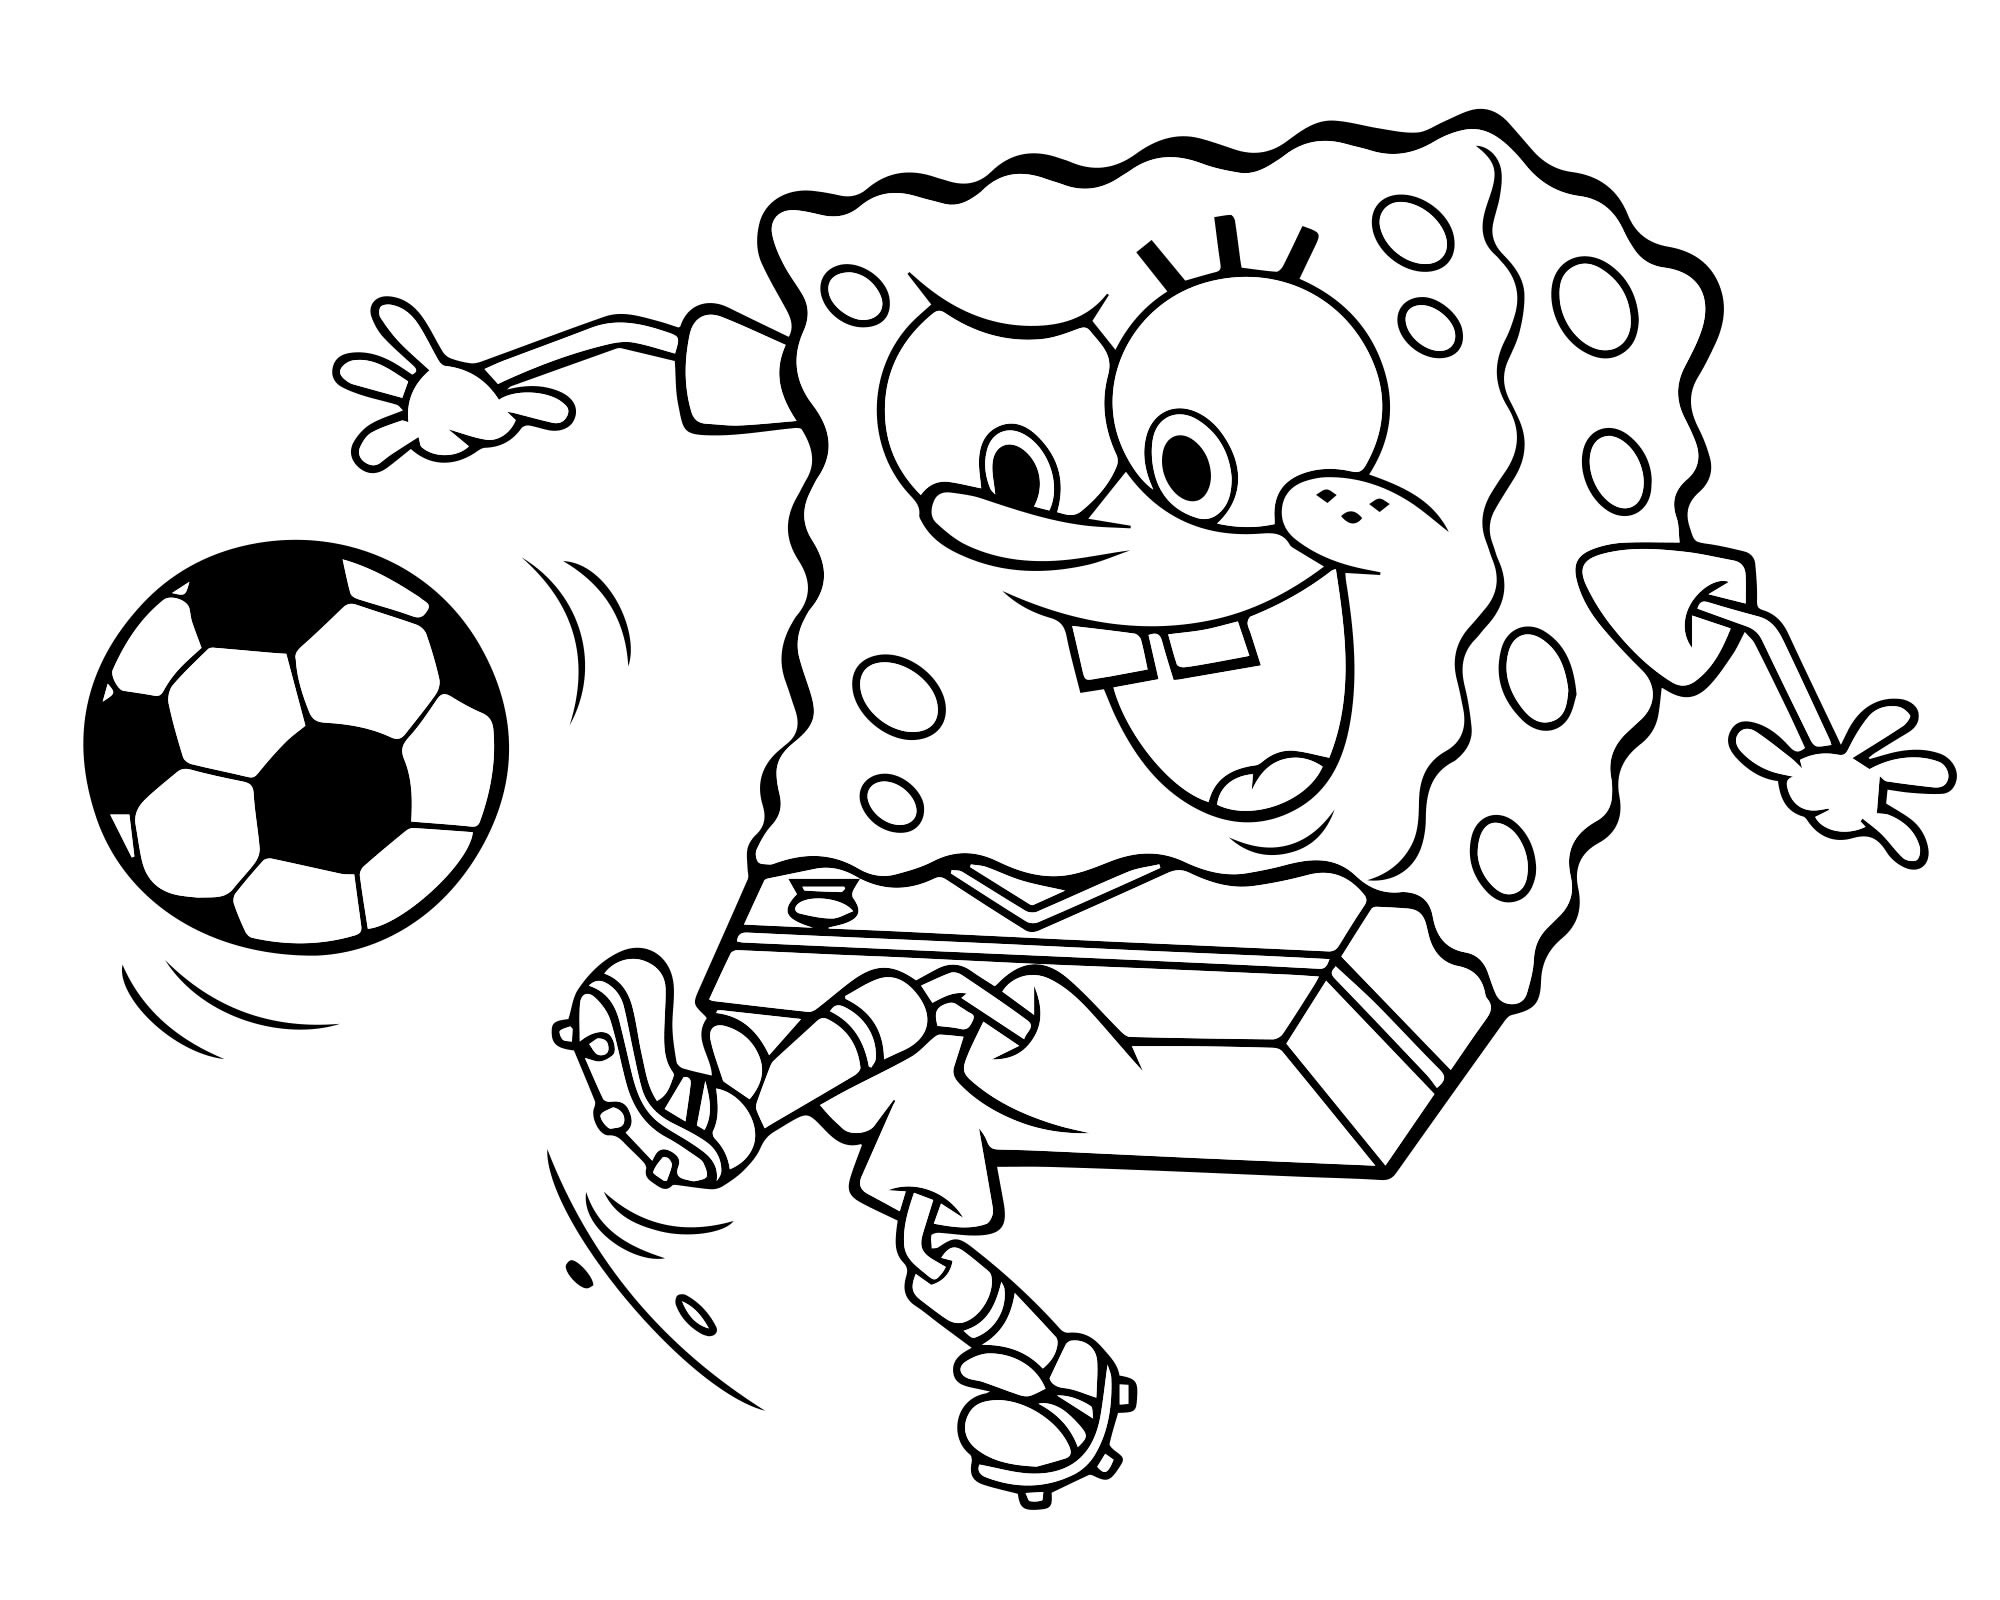 Спанч Боб играет в футбол раскраска для детей